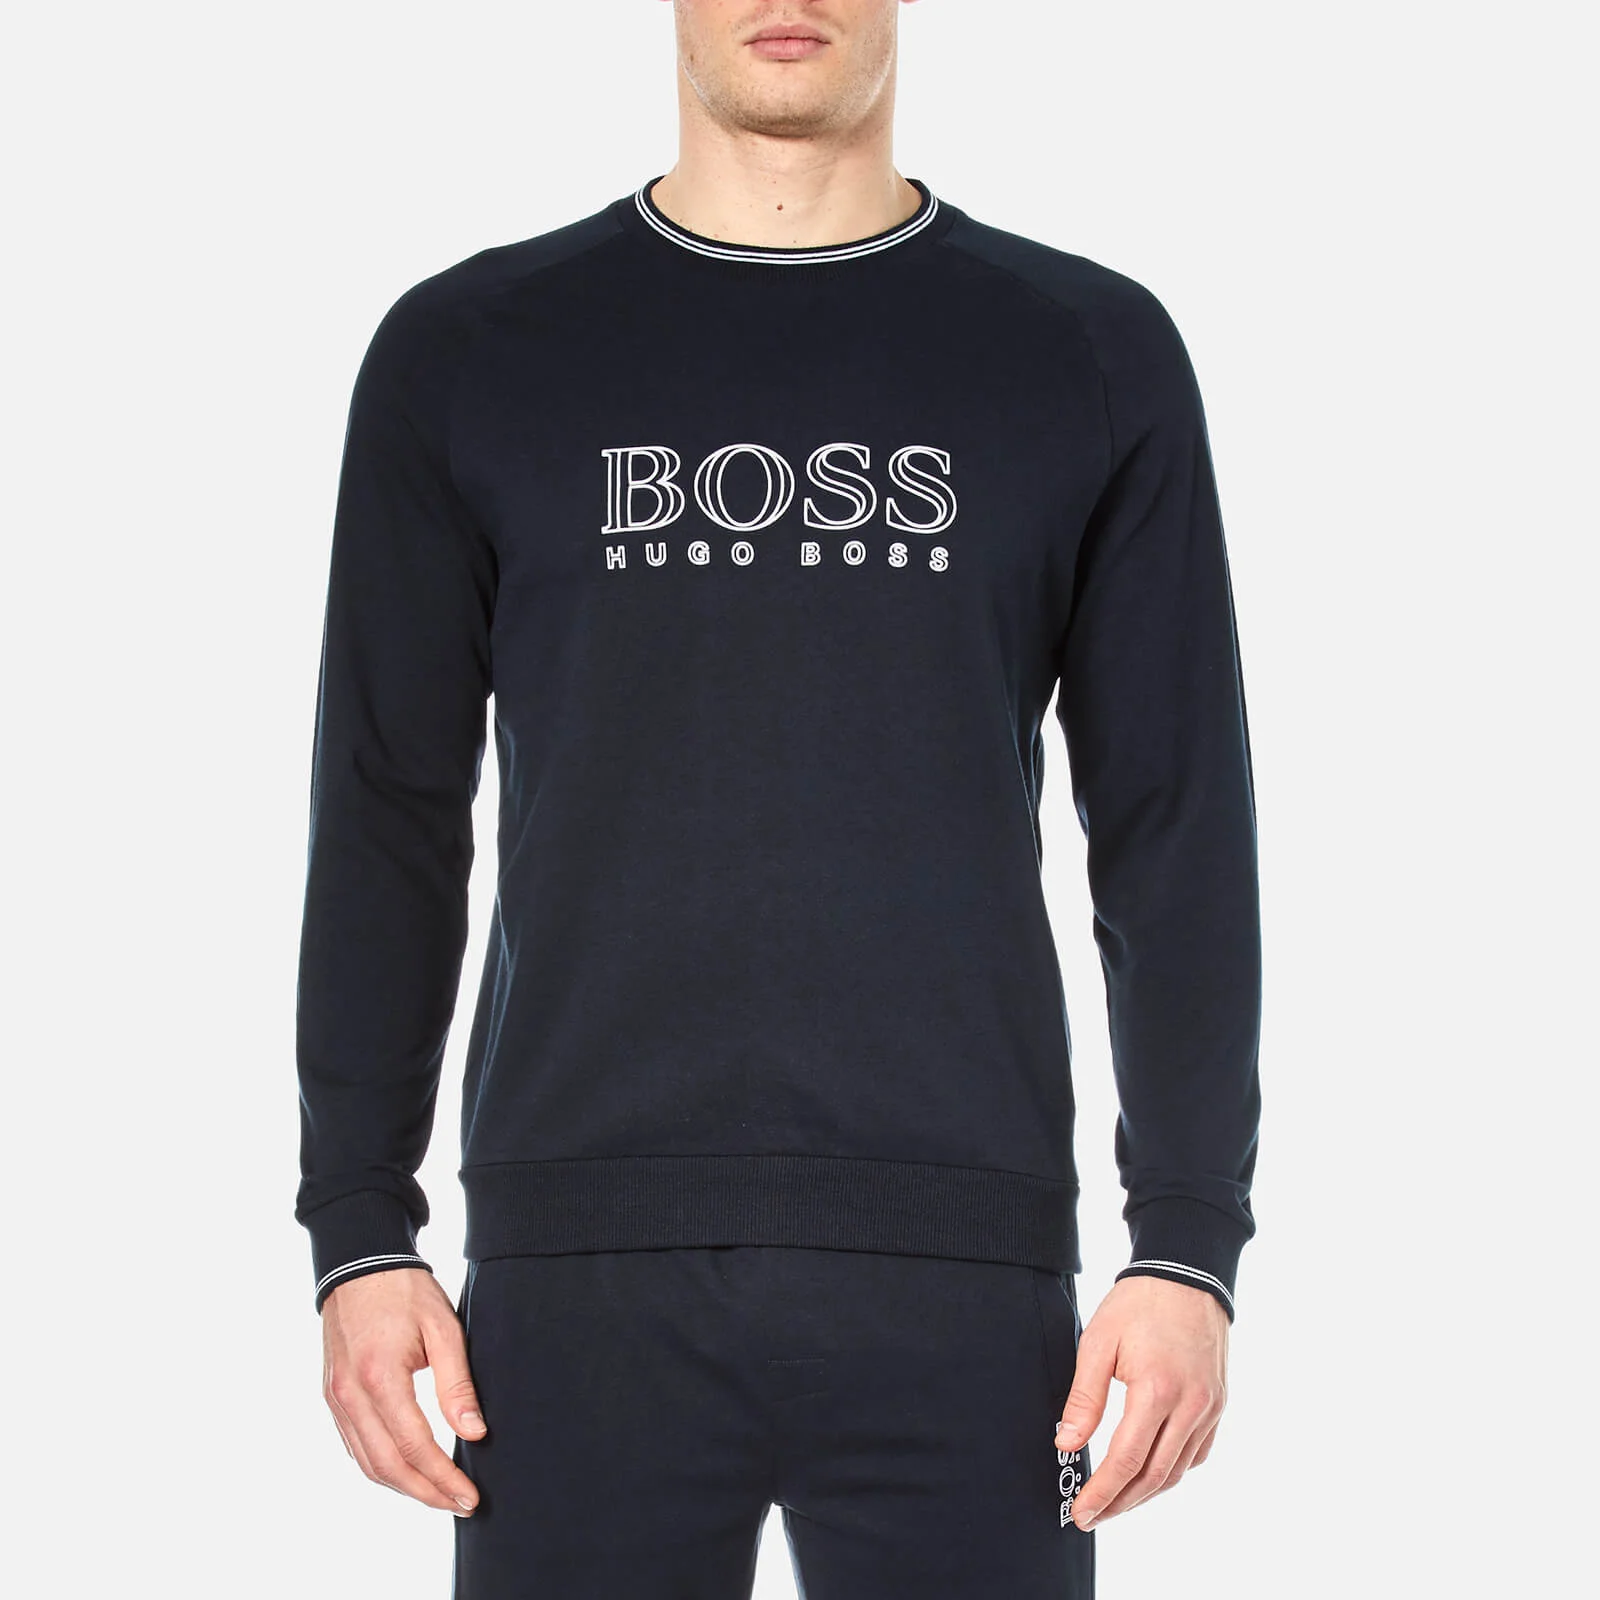 BOSS Hugo Boss Men's Logo Sweater - Navy Image 1